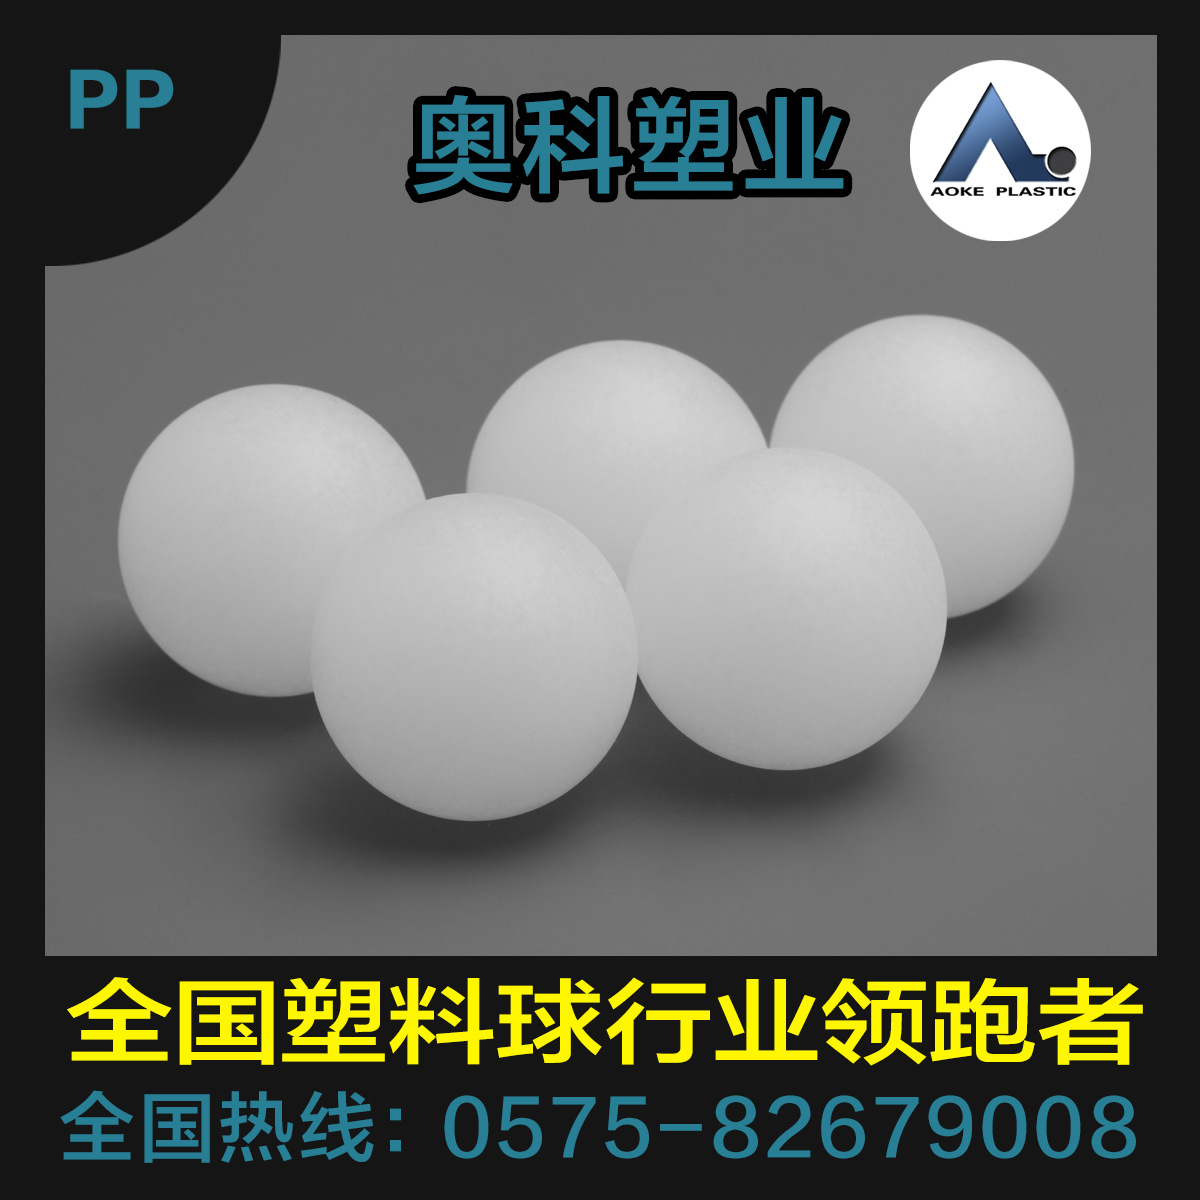 供应PP空心球25.2mm，适用于止汗瓶、香体露